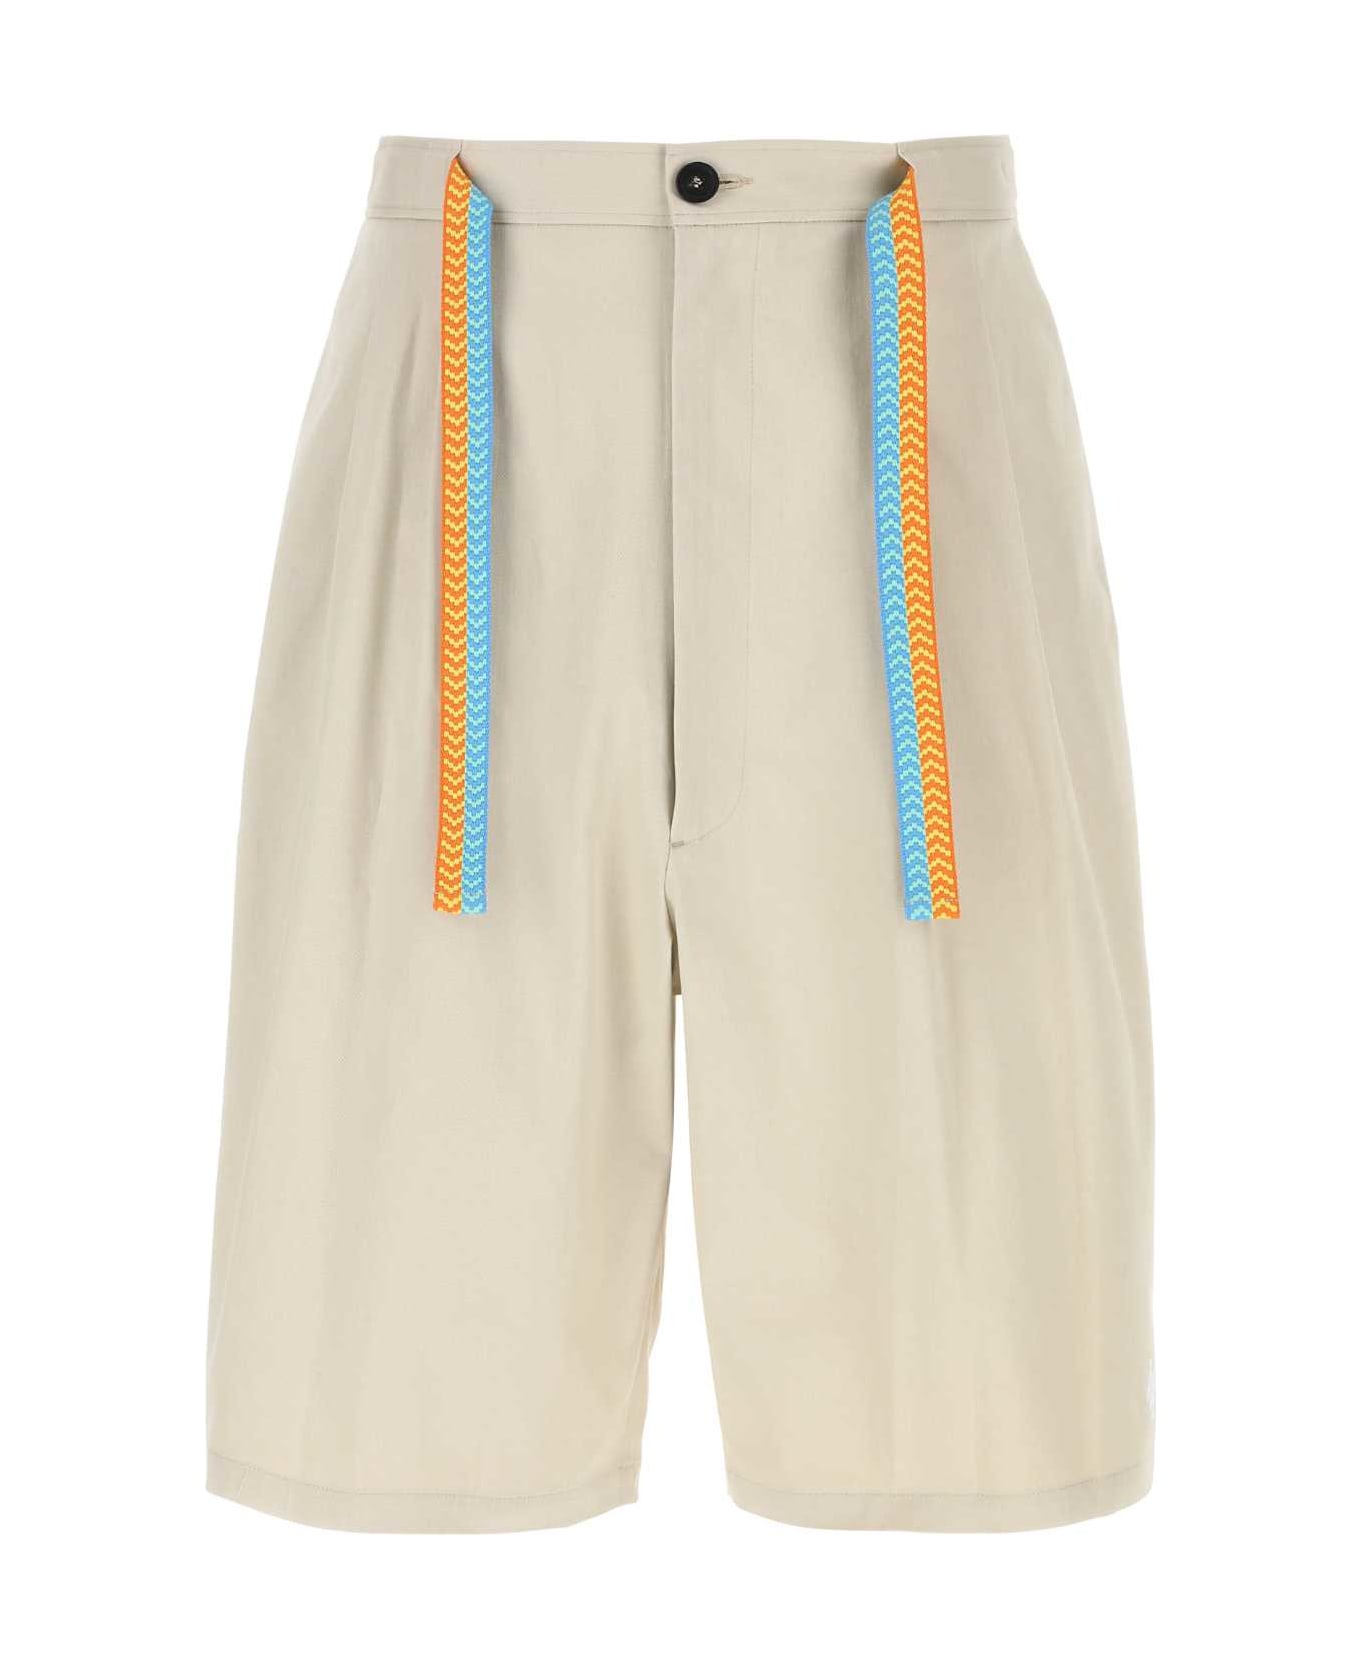 Marcelo Burlon Sand Stretch Cotton Bermuda Shorts - BEIGEWHITE ショートパンツ